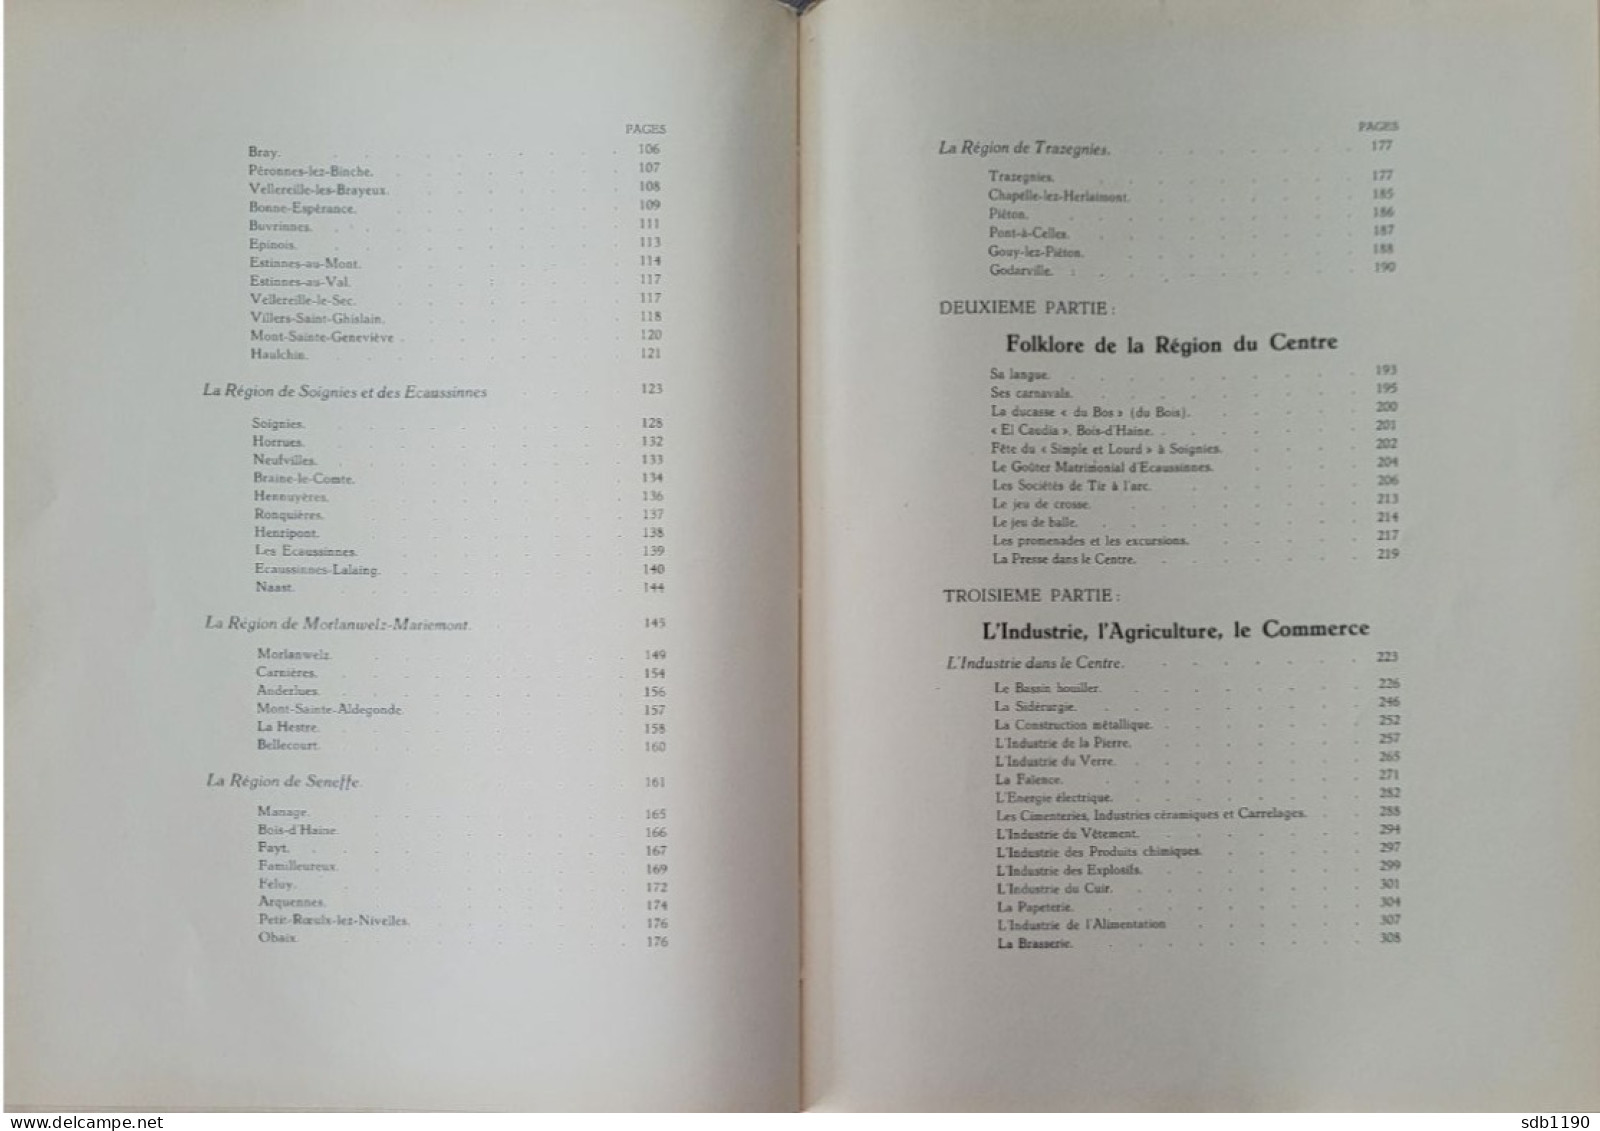 Livre 'Le Centre Archéologique, Folklorique, Industriel, Commercial, Artistique, Scolaire' 1930 Avec 317 Illustrations - Archéologie